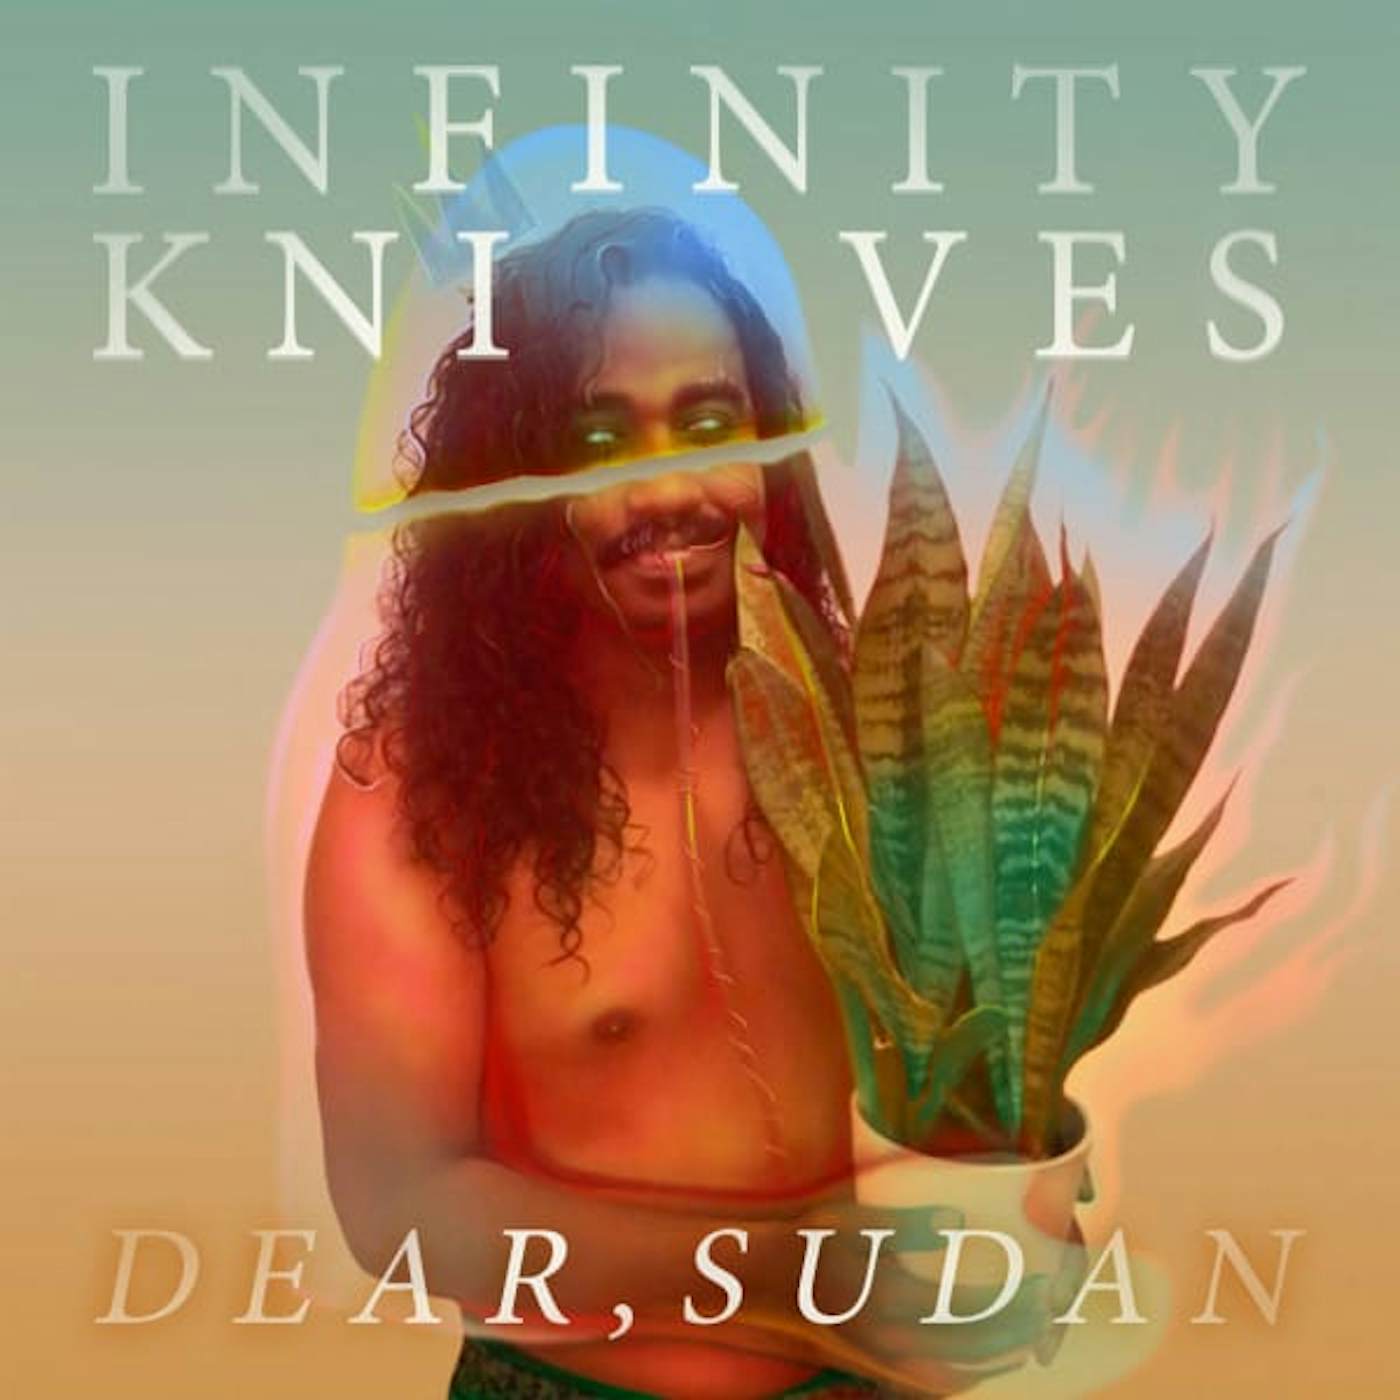 Infinity Knives DEAR SUDAN Vinyl Record